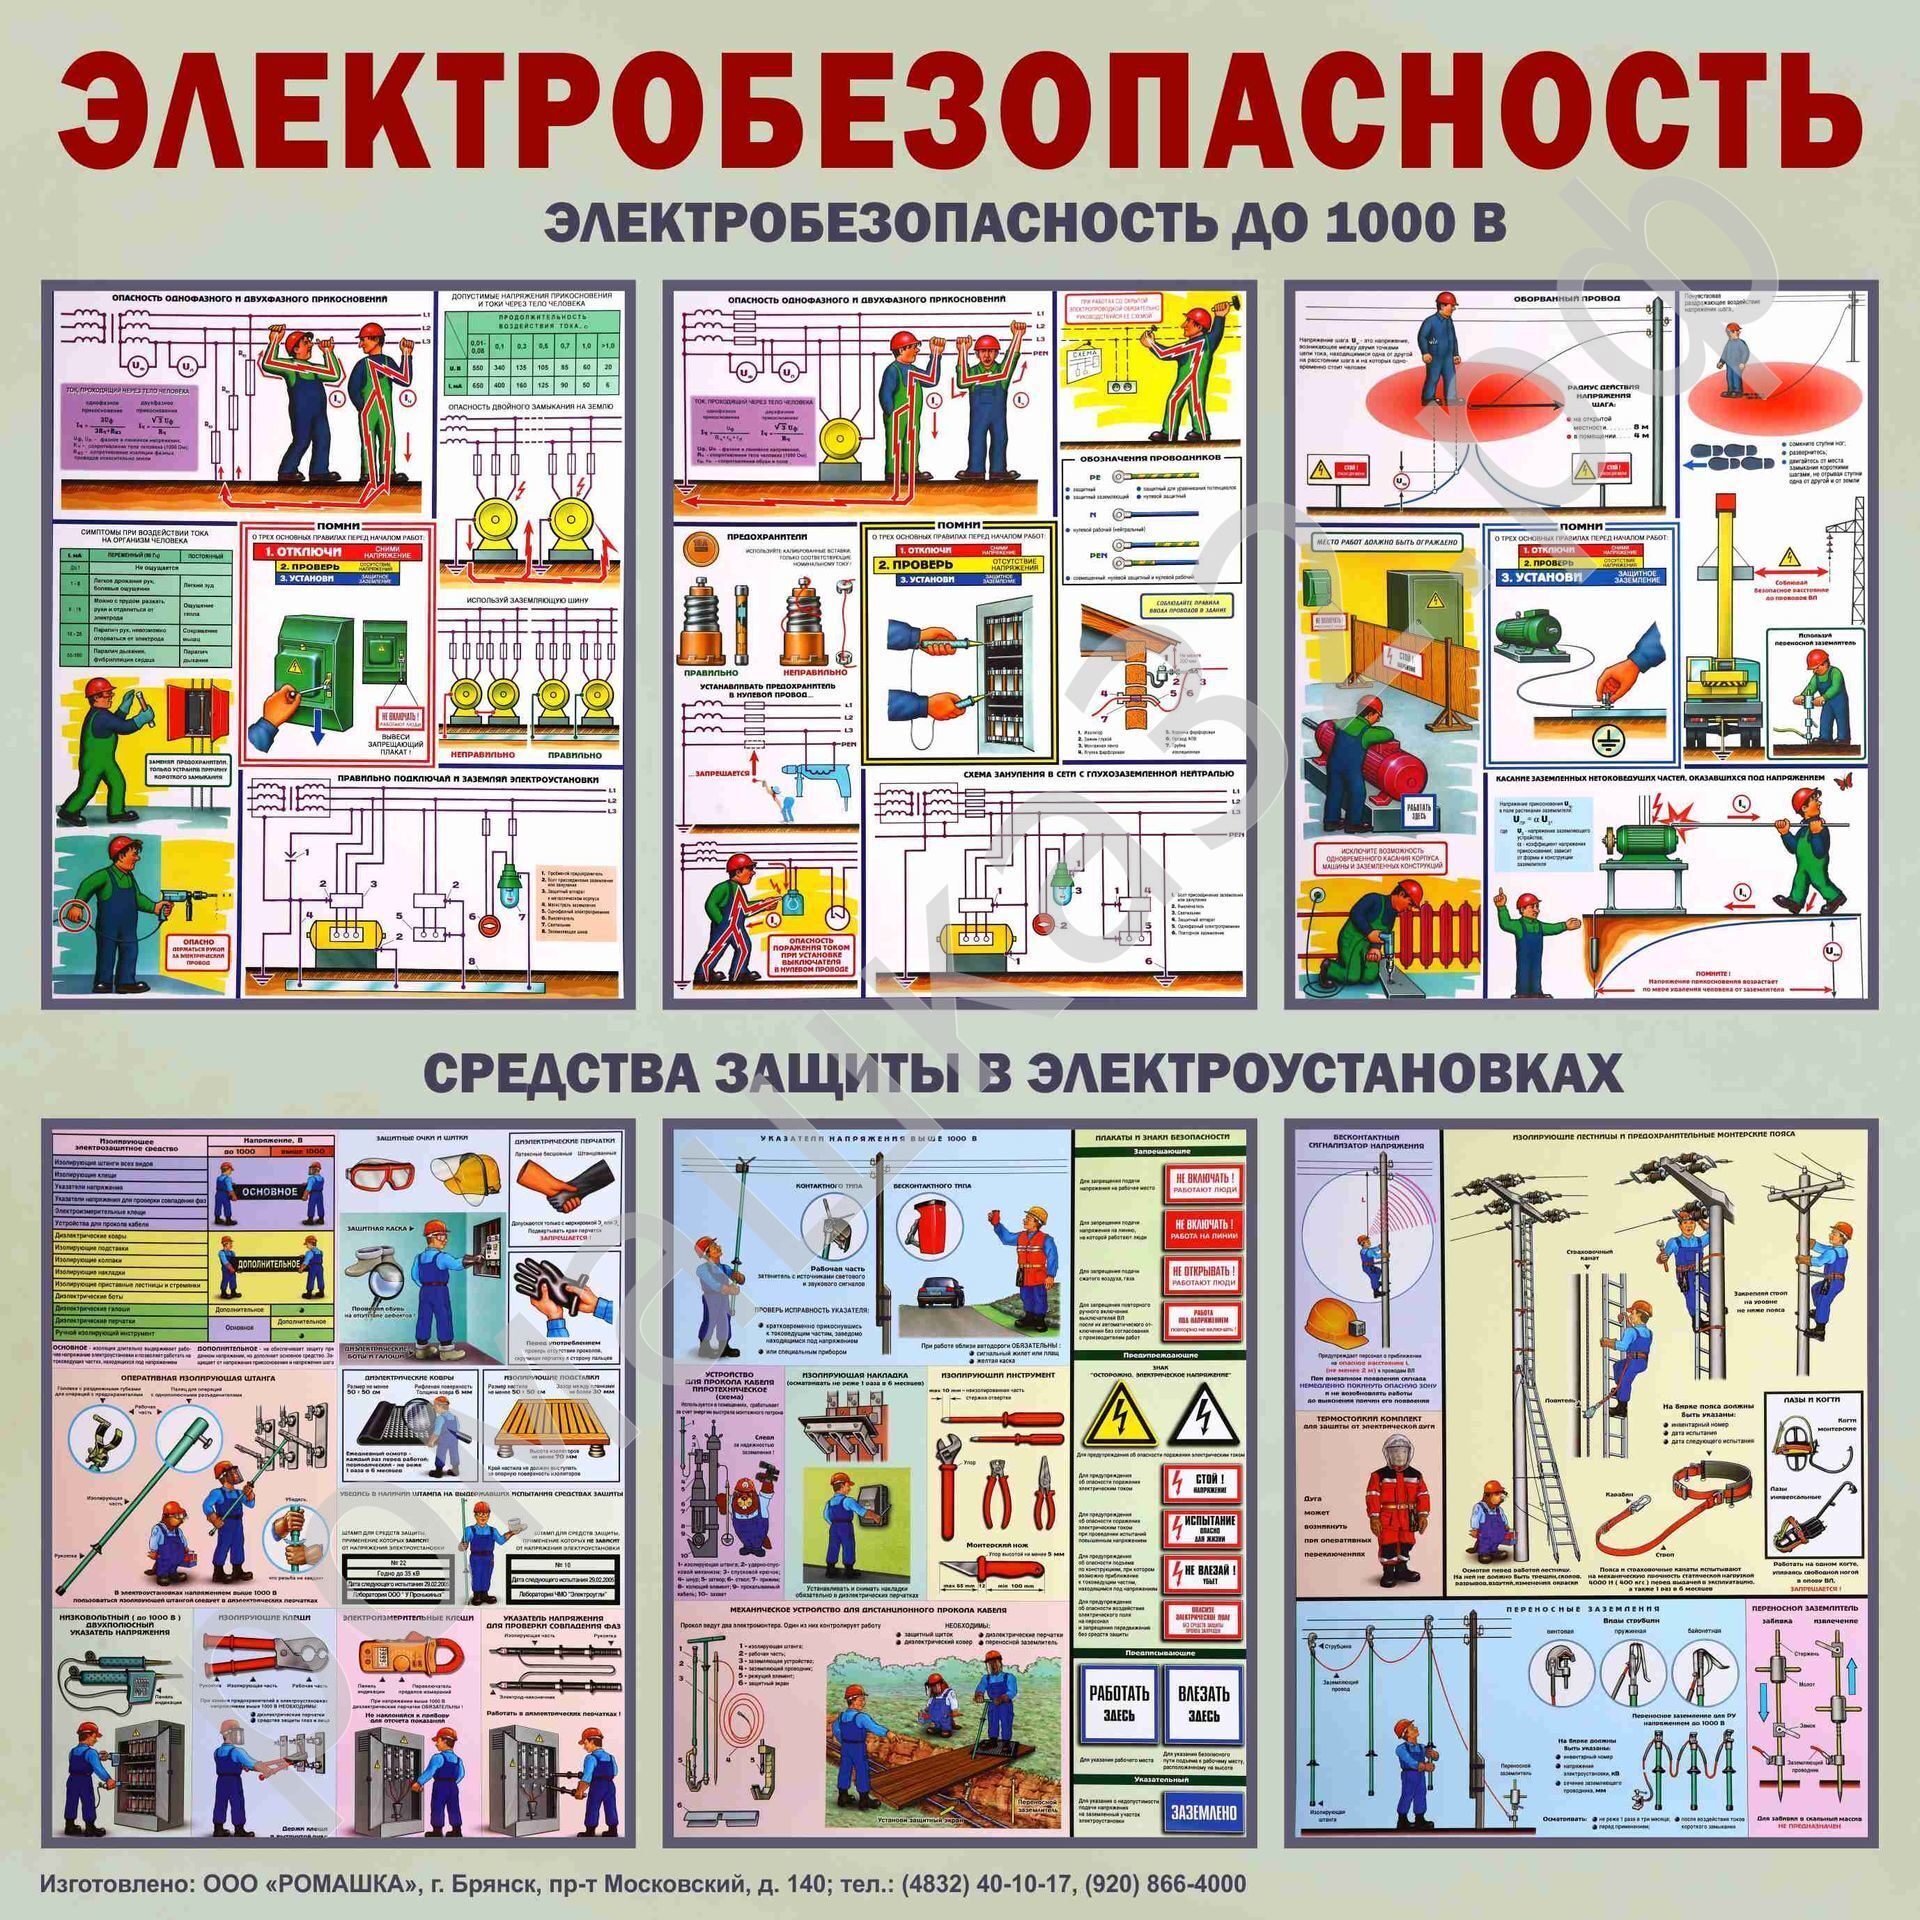 Электробезопасность 2 группа до 1000 atelectro ru. Электробезопасность. Плакат «электробезопасность». Плакаты по электробезопасности в электроустановках. Электробезопасность на производстве охрана труда.